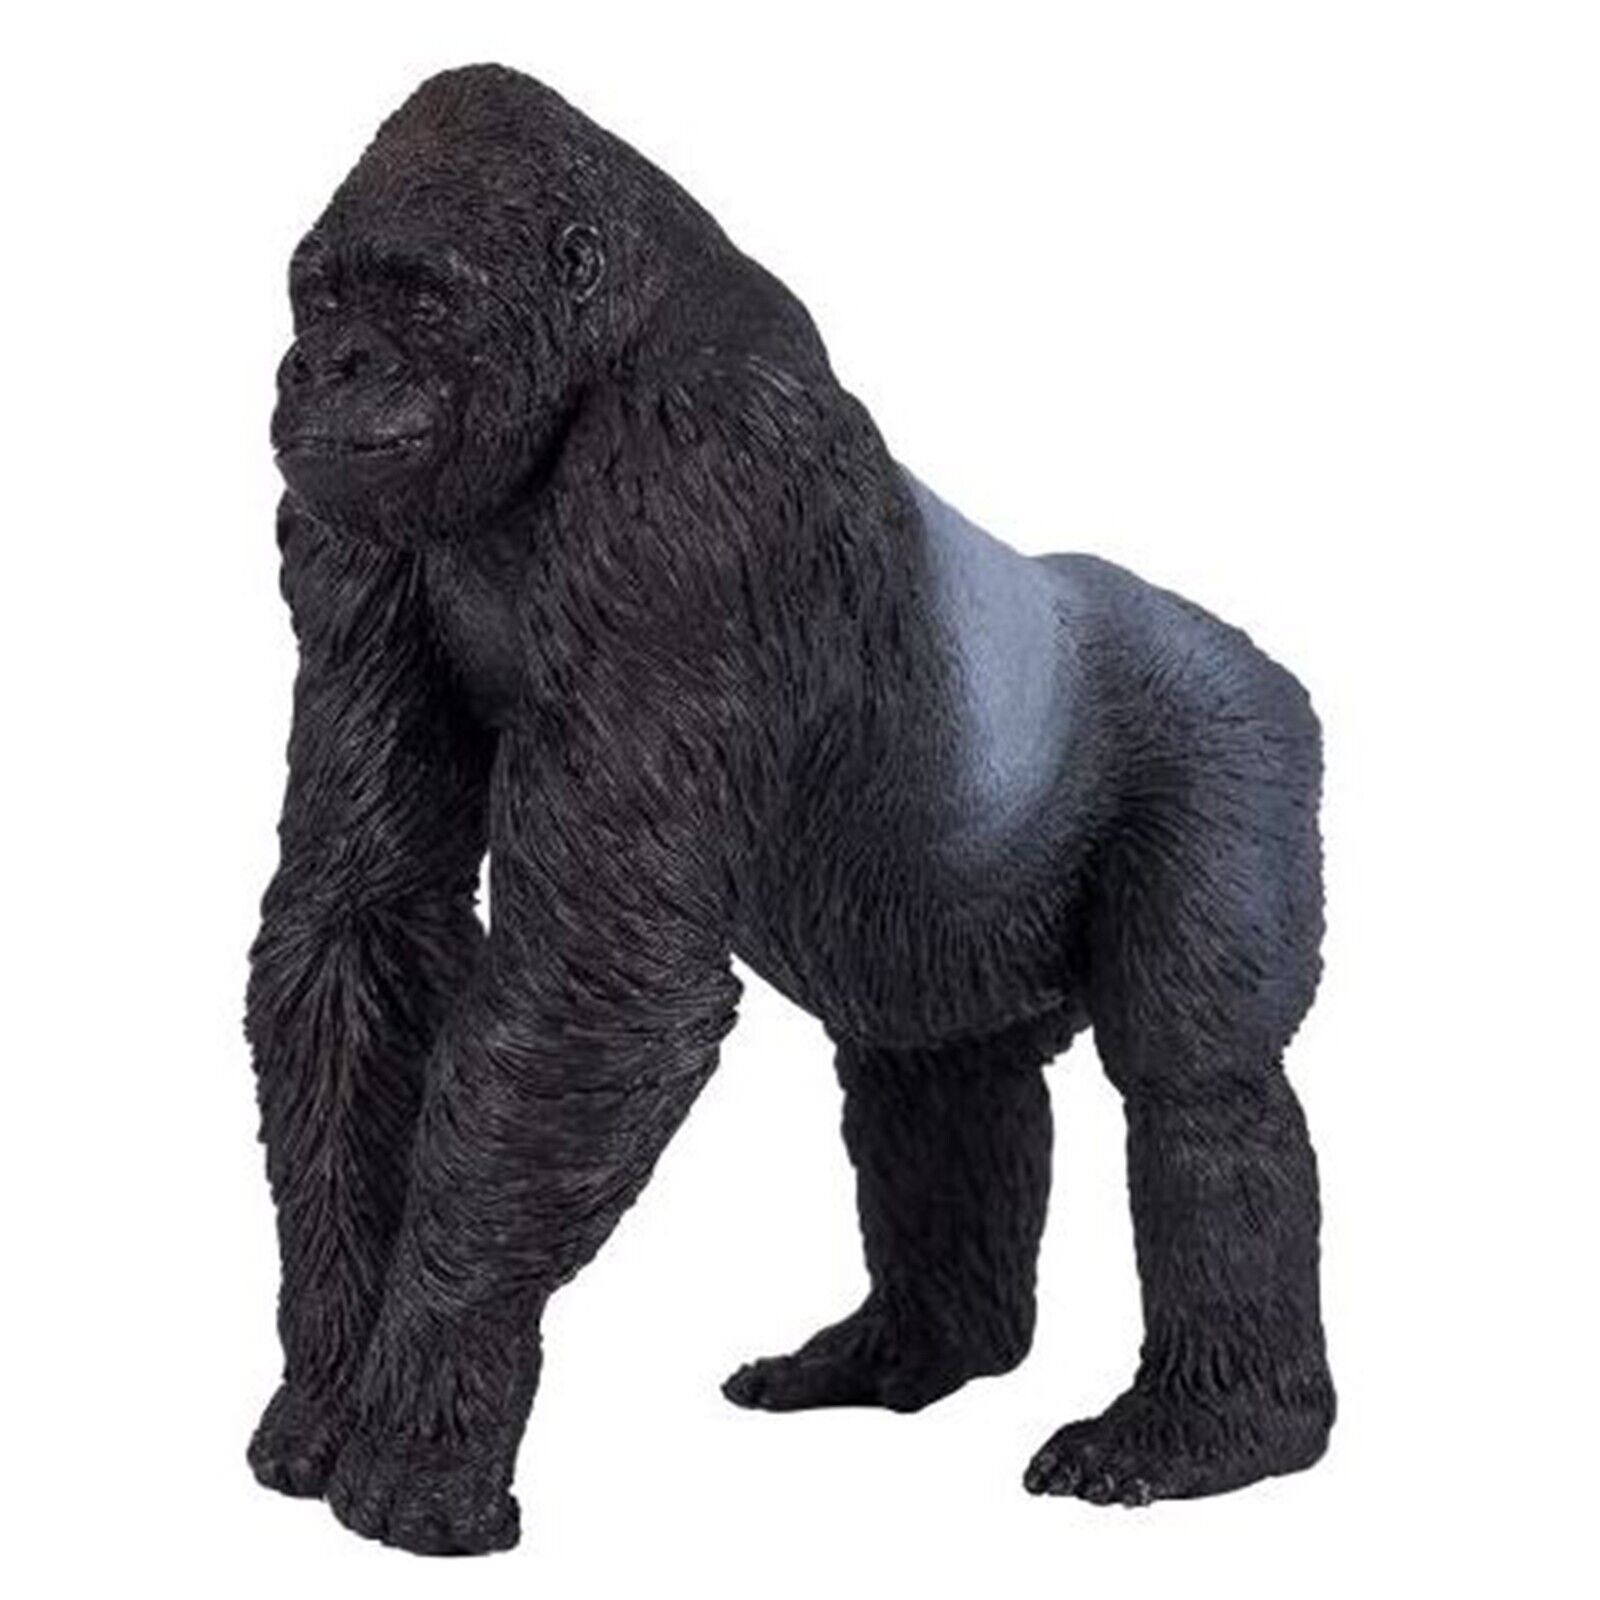 MOJO Silverback Gorilla Animal Figure 381003 NEW